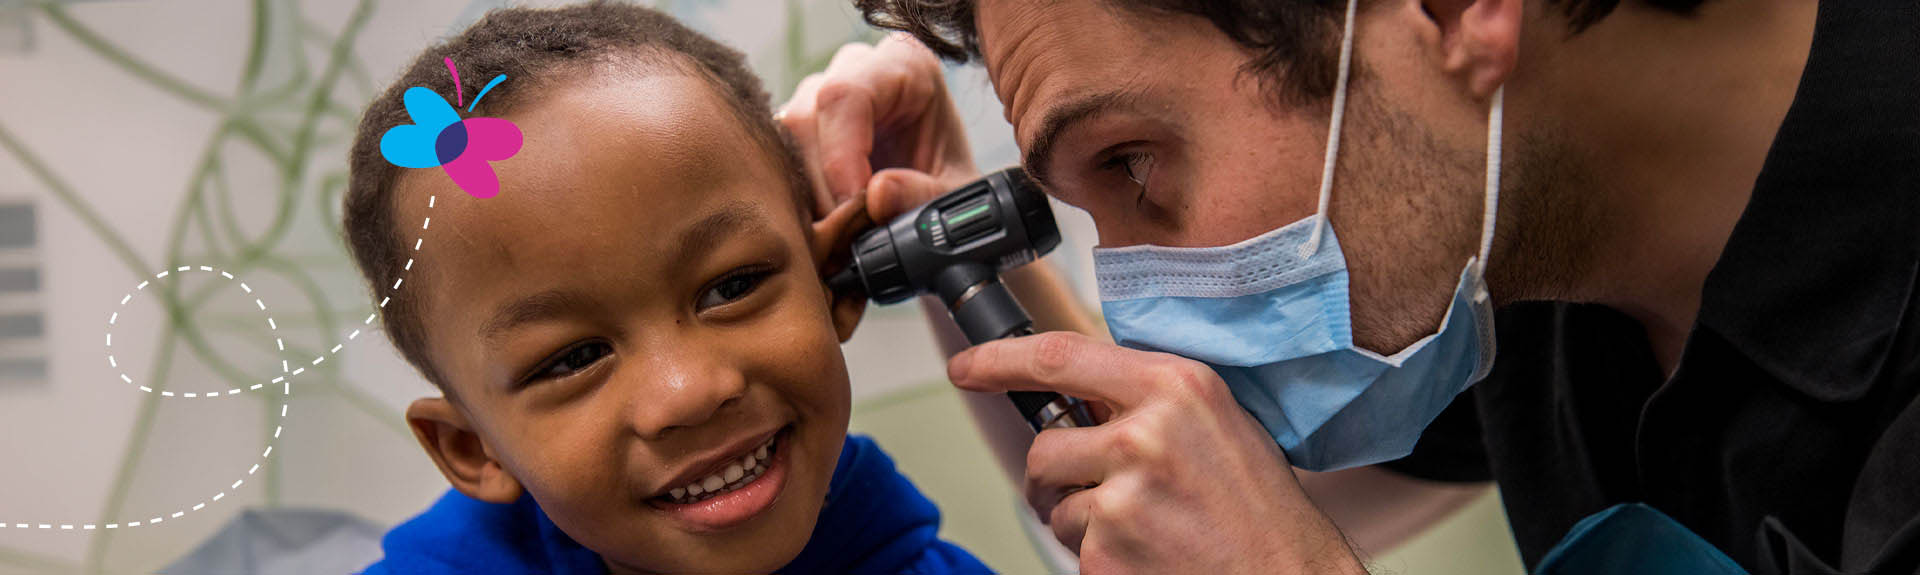 doctor examining pediatric patient